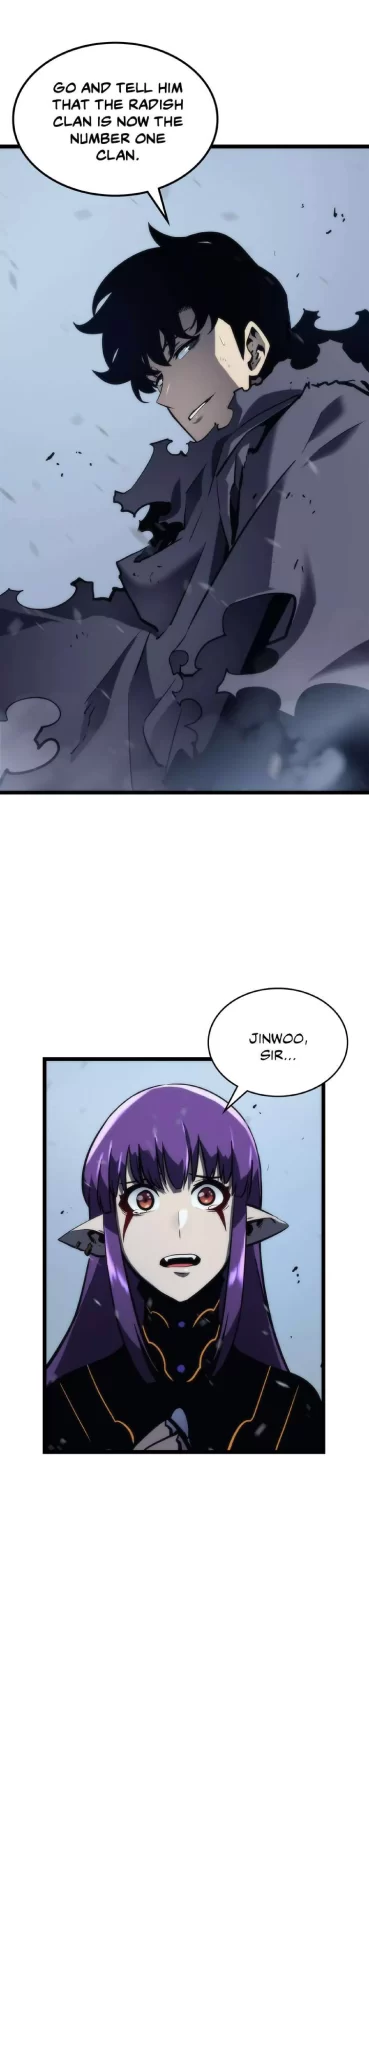 Solo Leveling Manga Manga Chapter - 87 - image 38